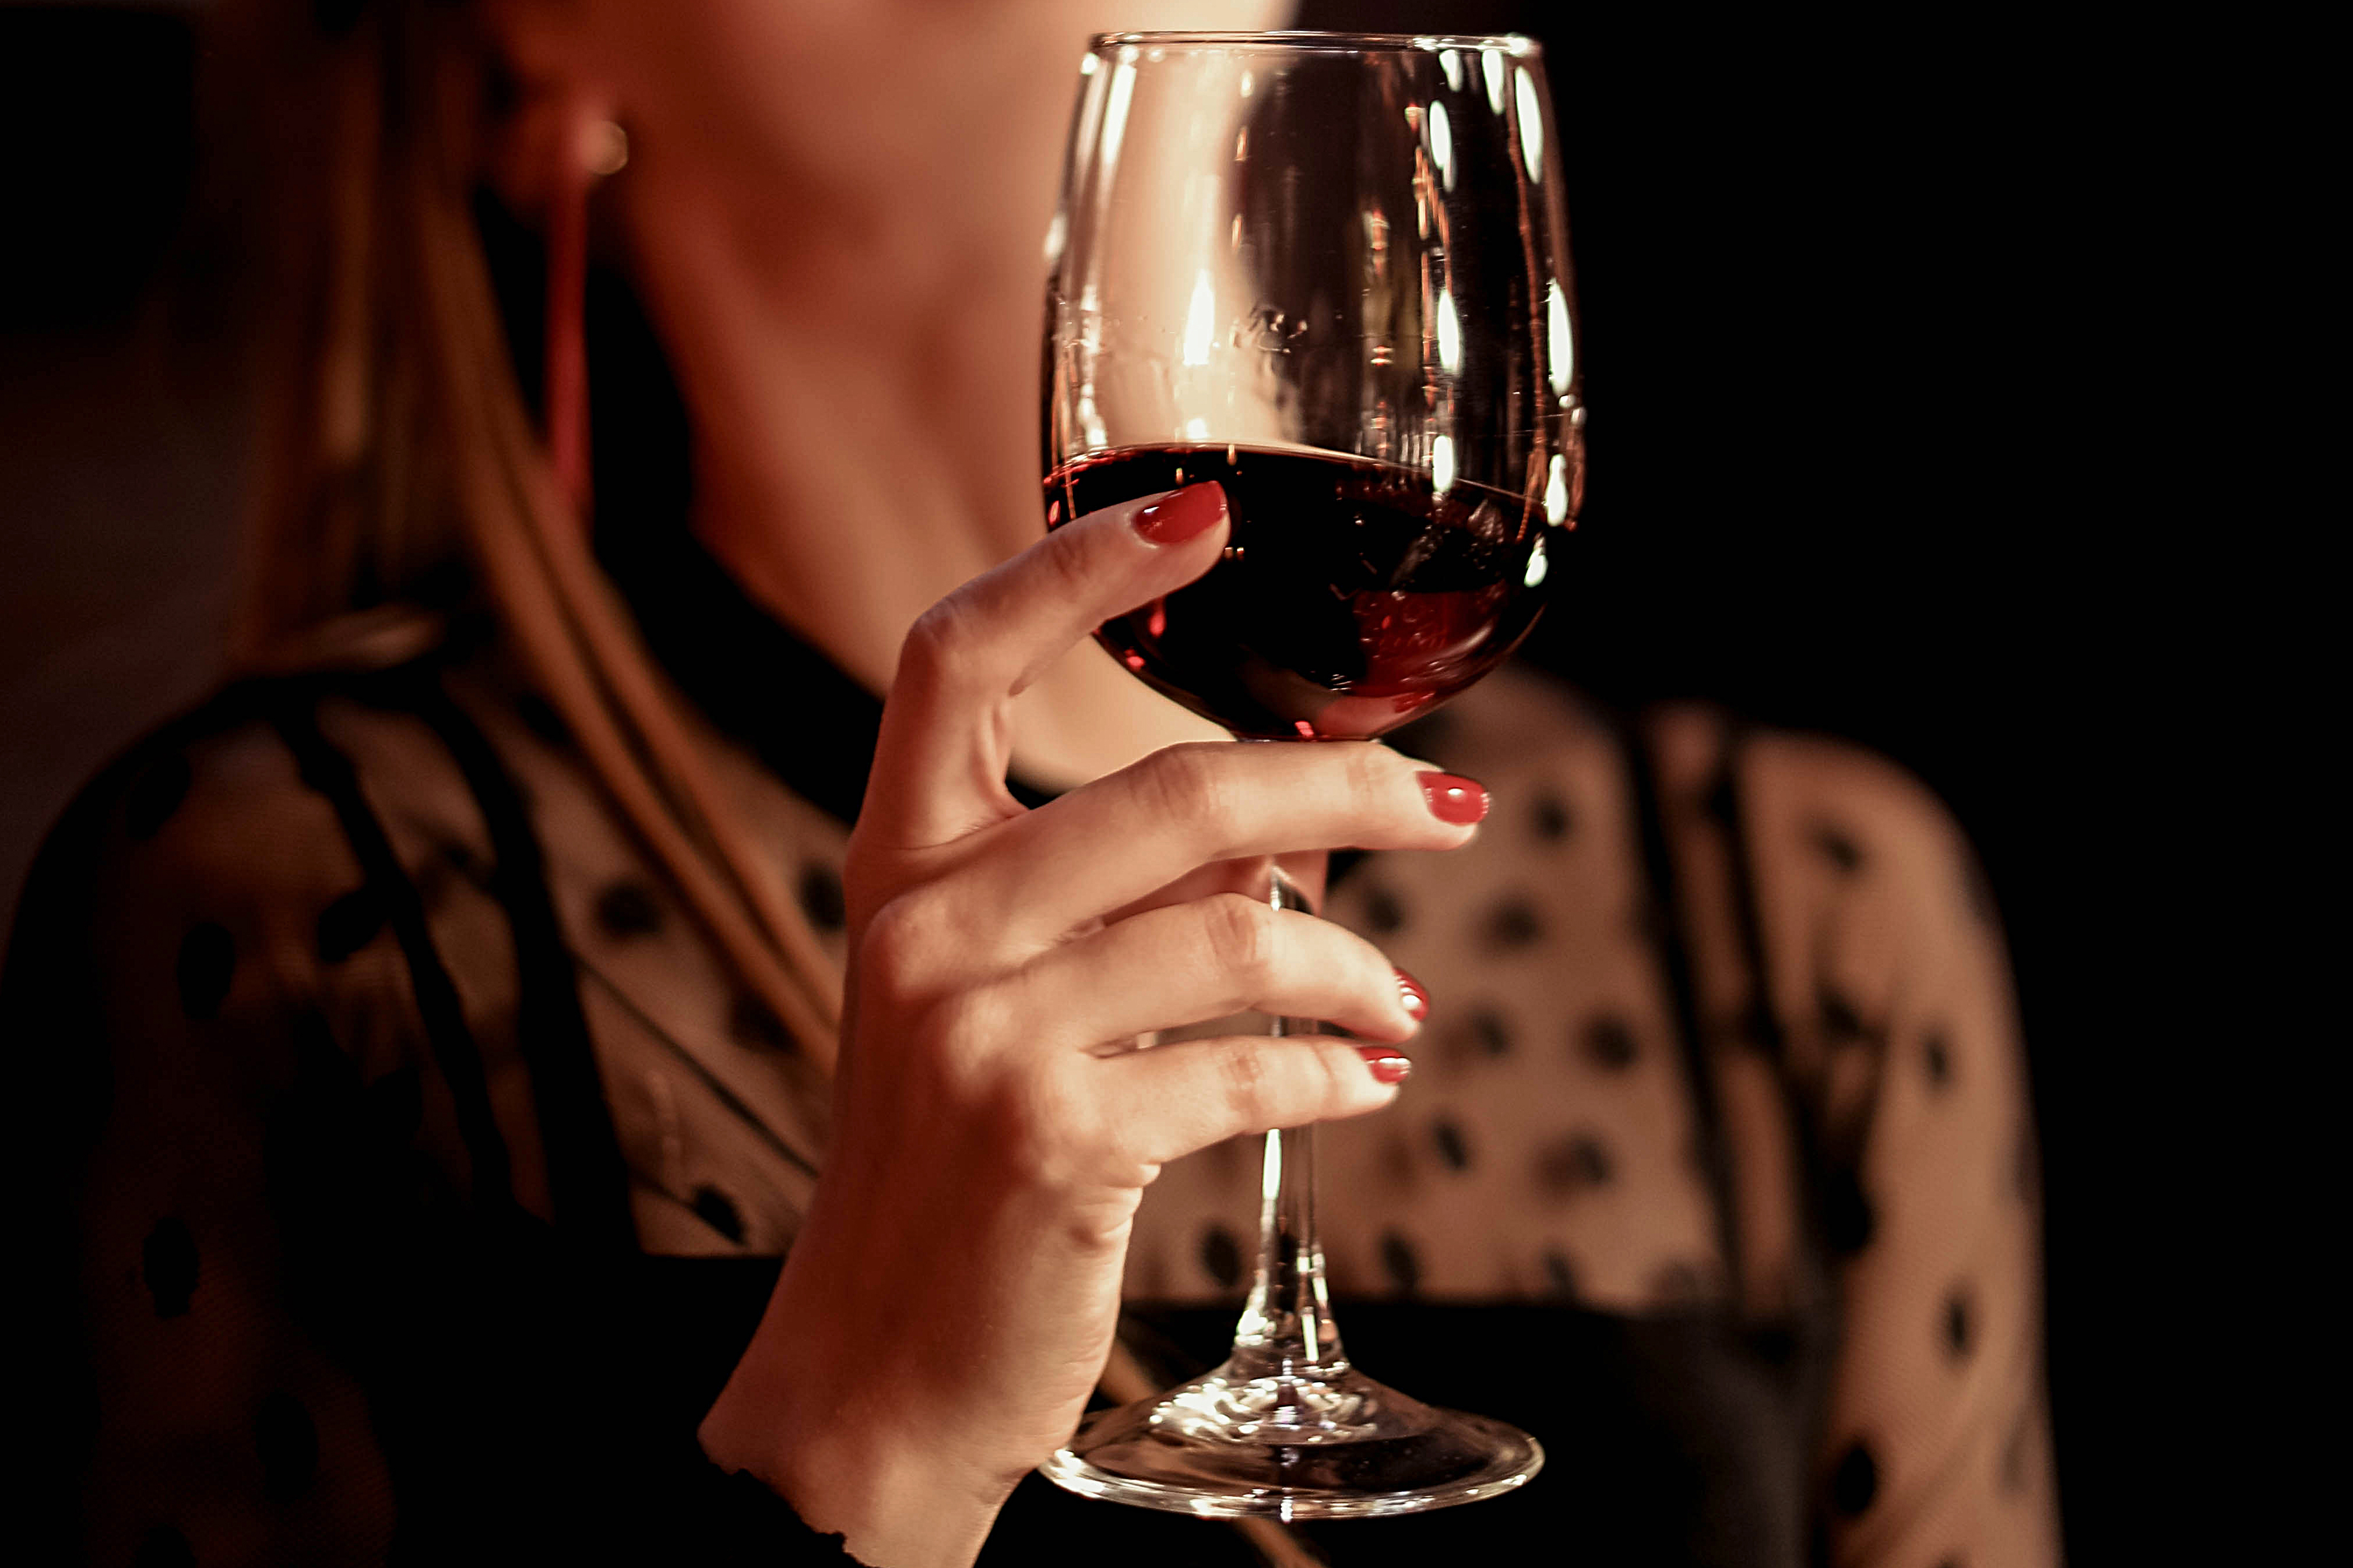 Femme levant un verre de vin | Source : Shutterstock